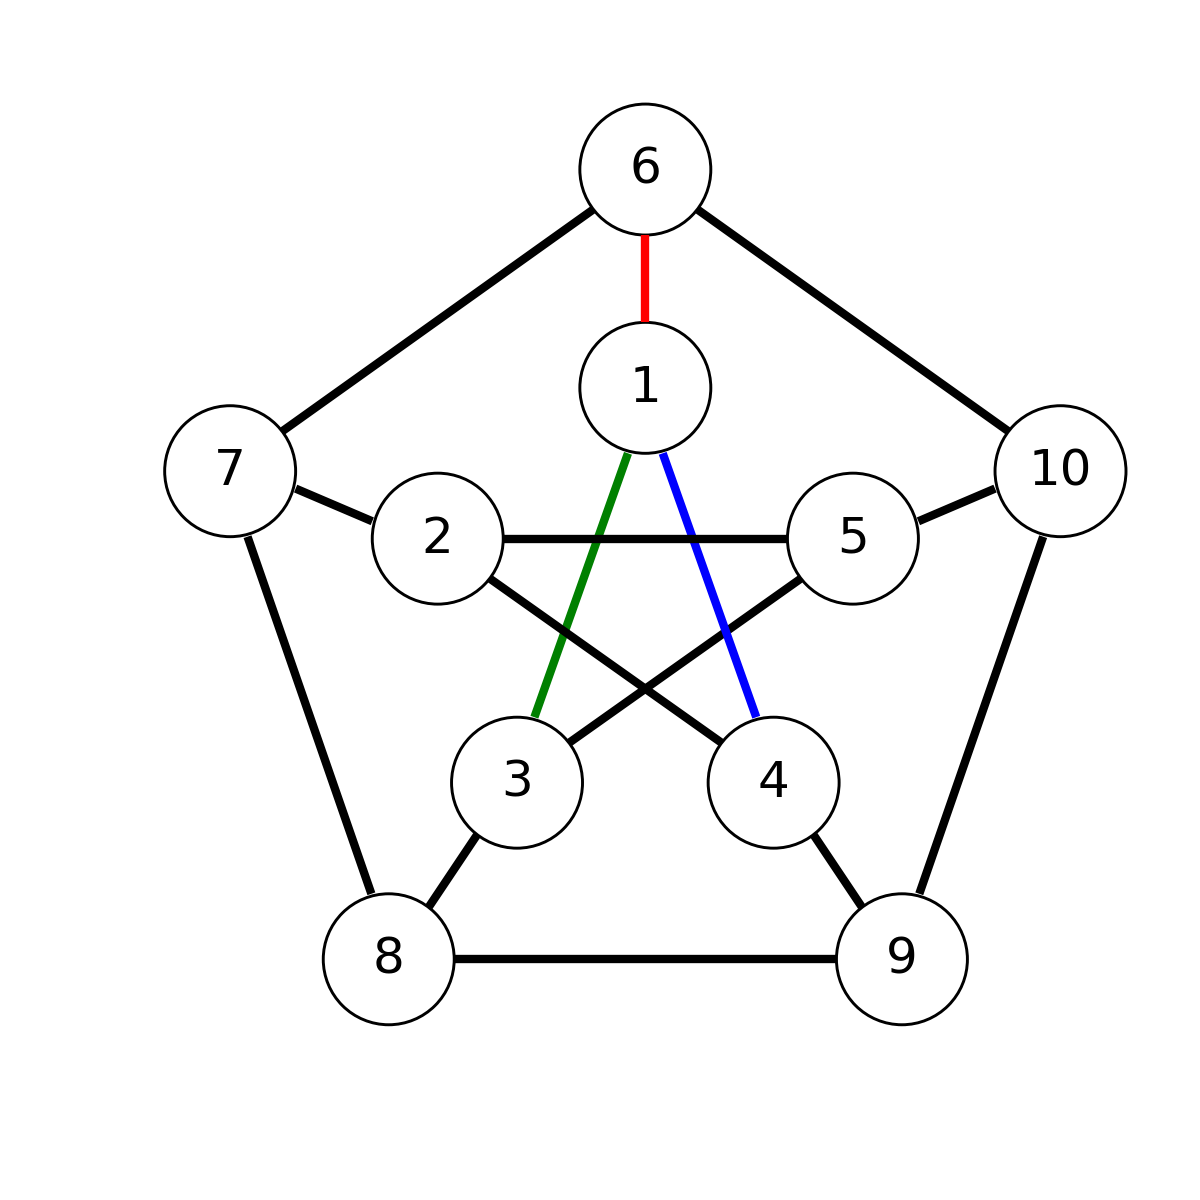 petersen-graph